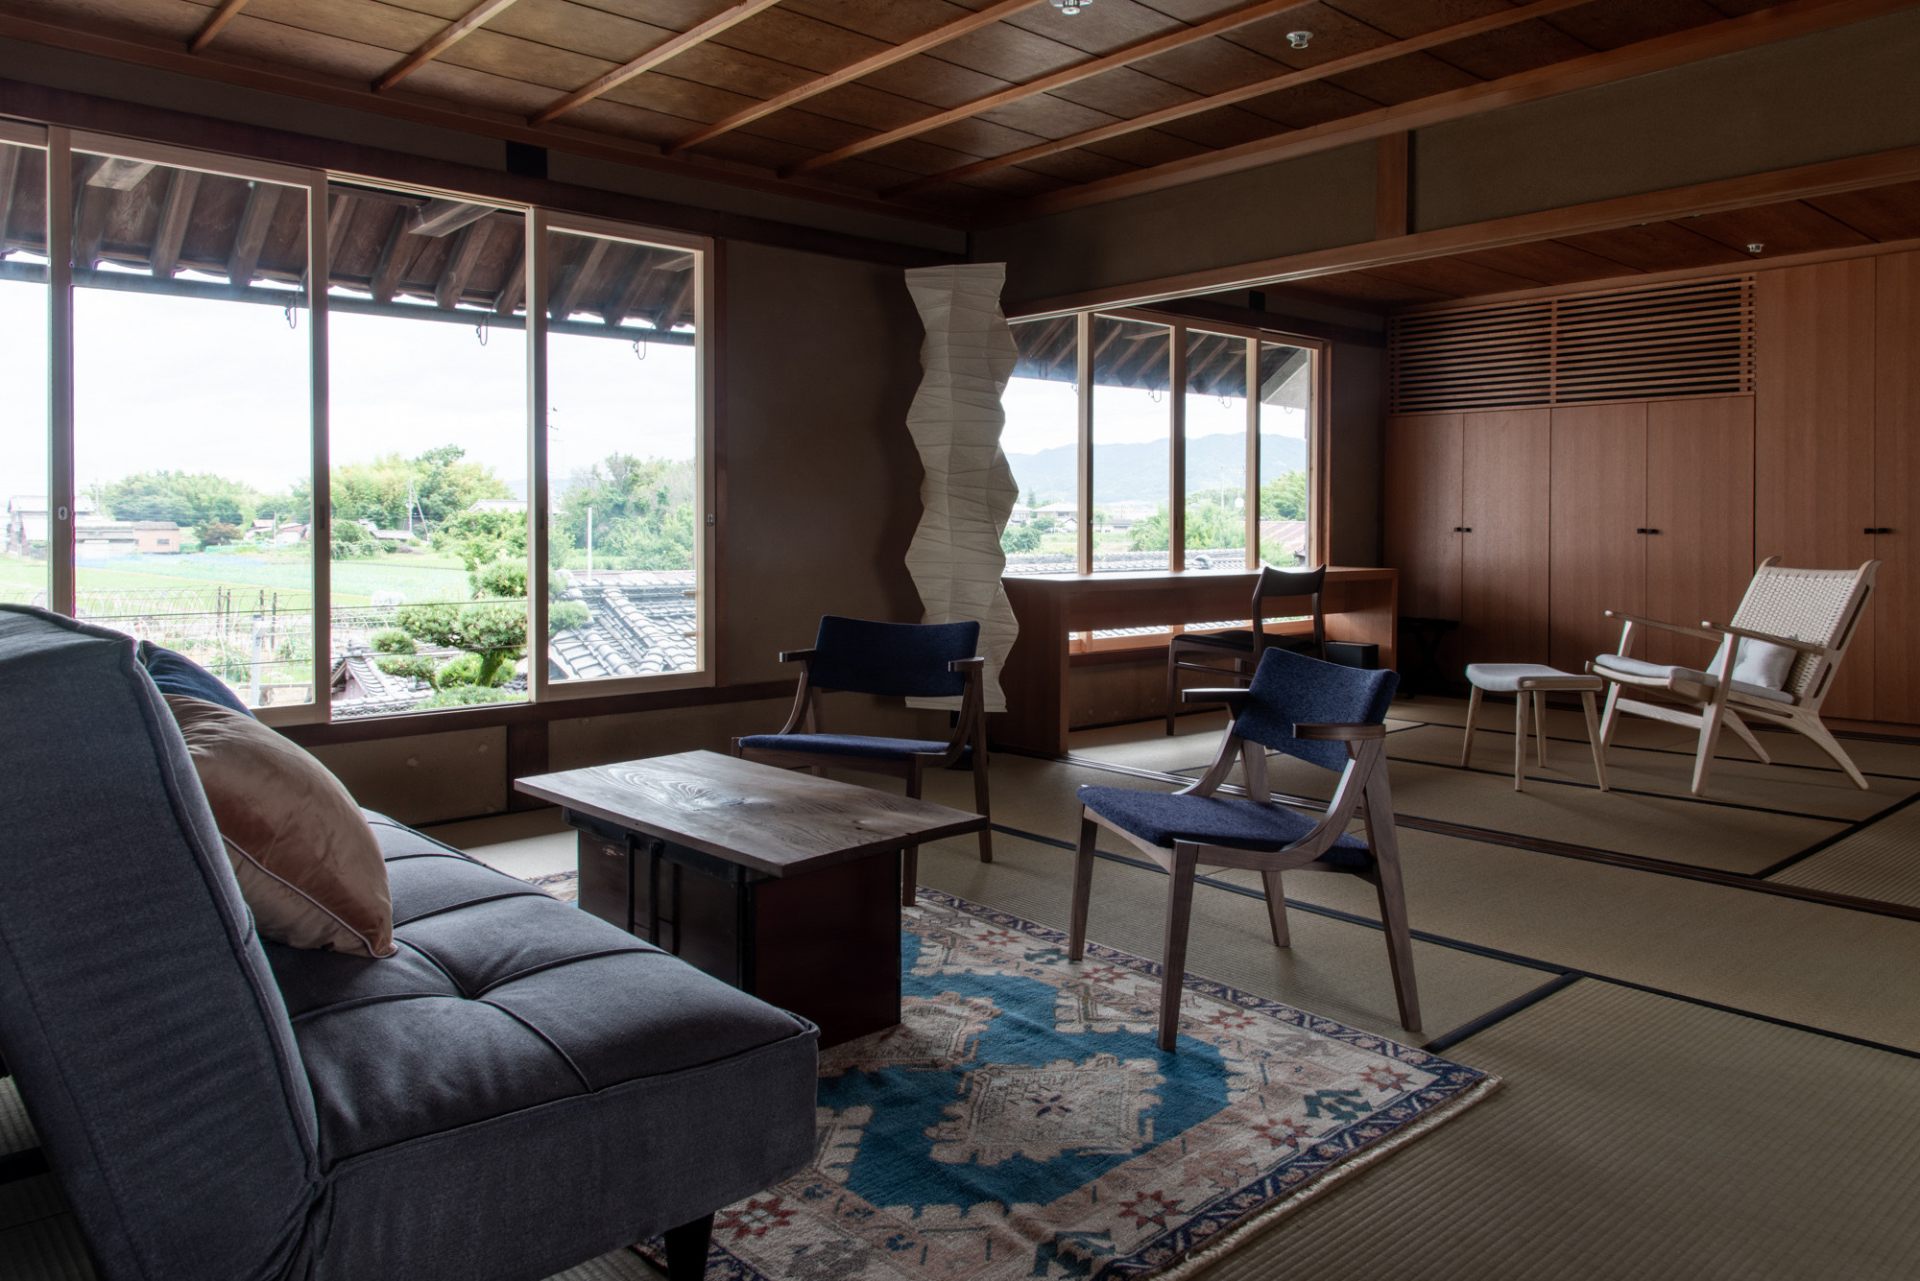 Renovado en un espacio cómodo manteniendo el estilo arquitectónico llamado Yamato-mune